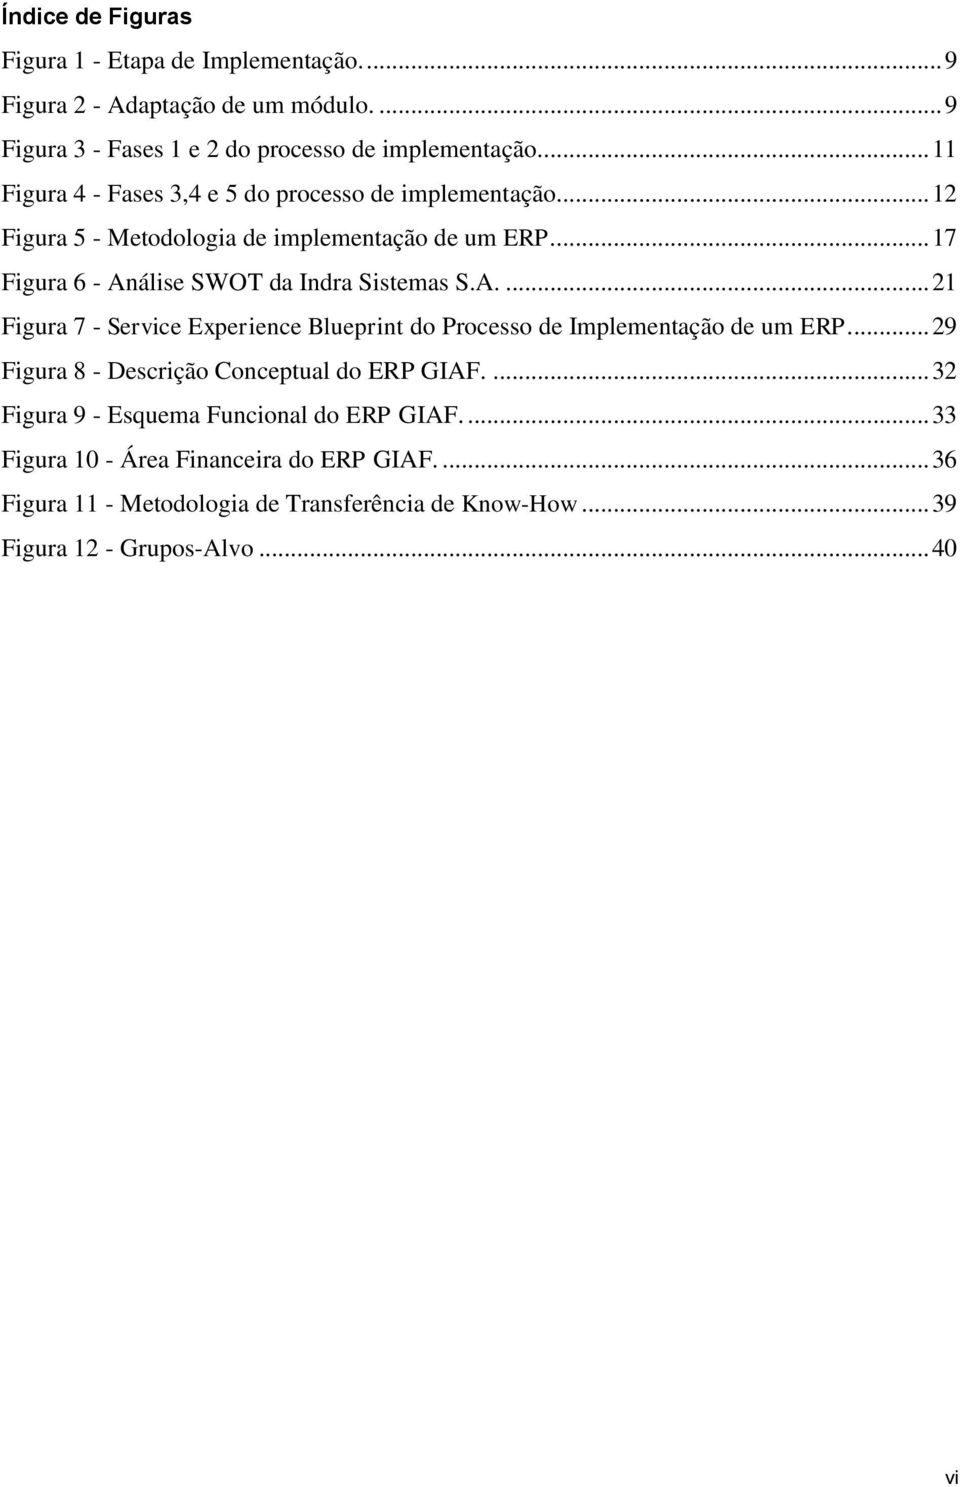 ... 17 Figura 6 - Análise SWOT da Indra Sistemas S.A.... 21 Figura 7 - Service Experience Blueprint do Processo de Implementação de um ERP.